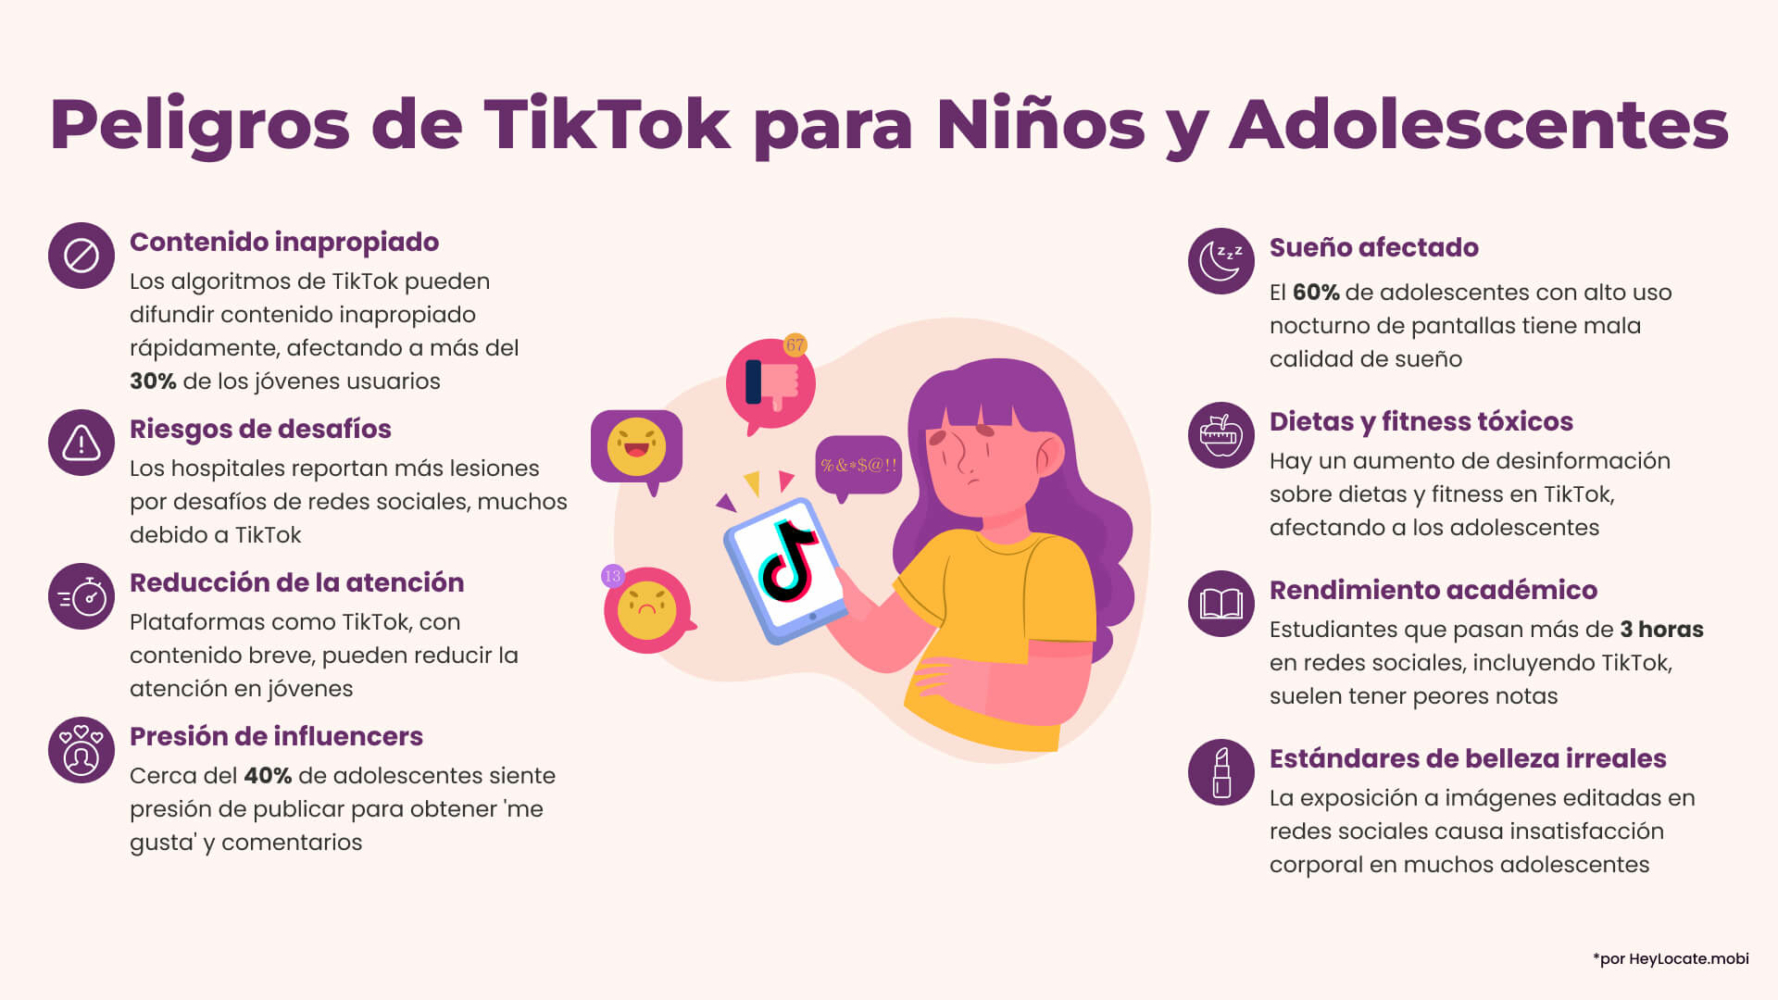 Lista de peligros de TikTok para niños y adolescentes mostrada en la infografía de HeyLocate.mobi